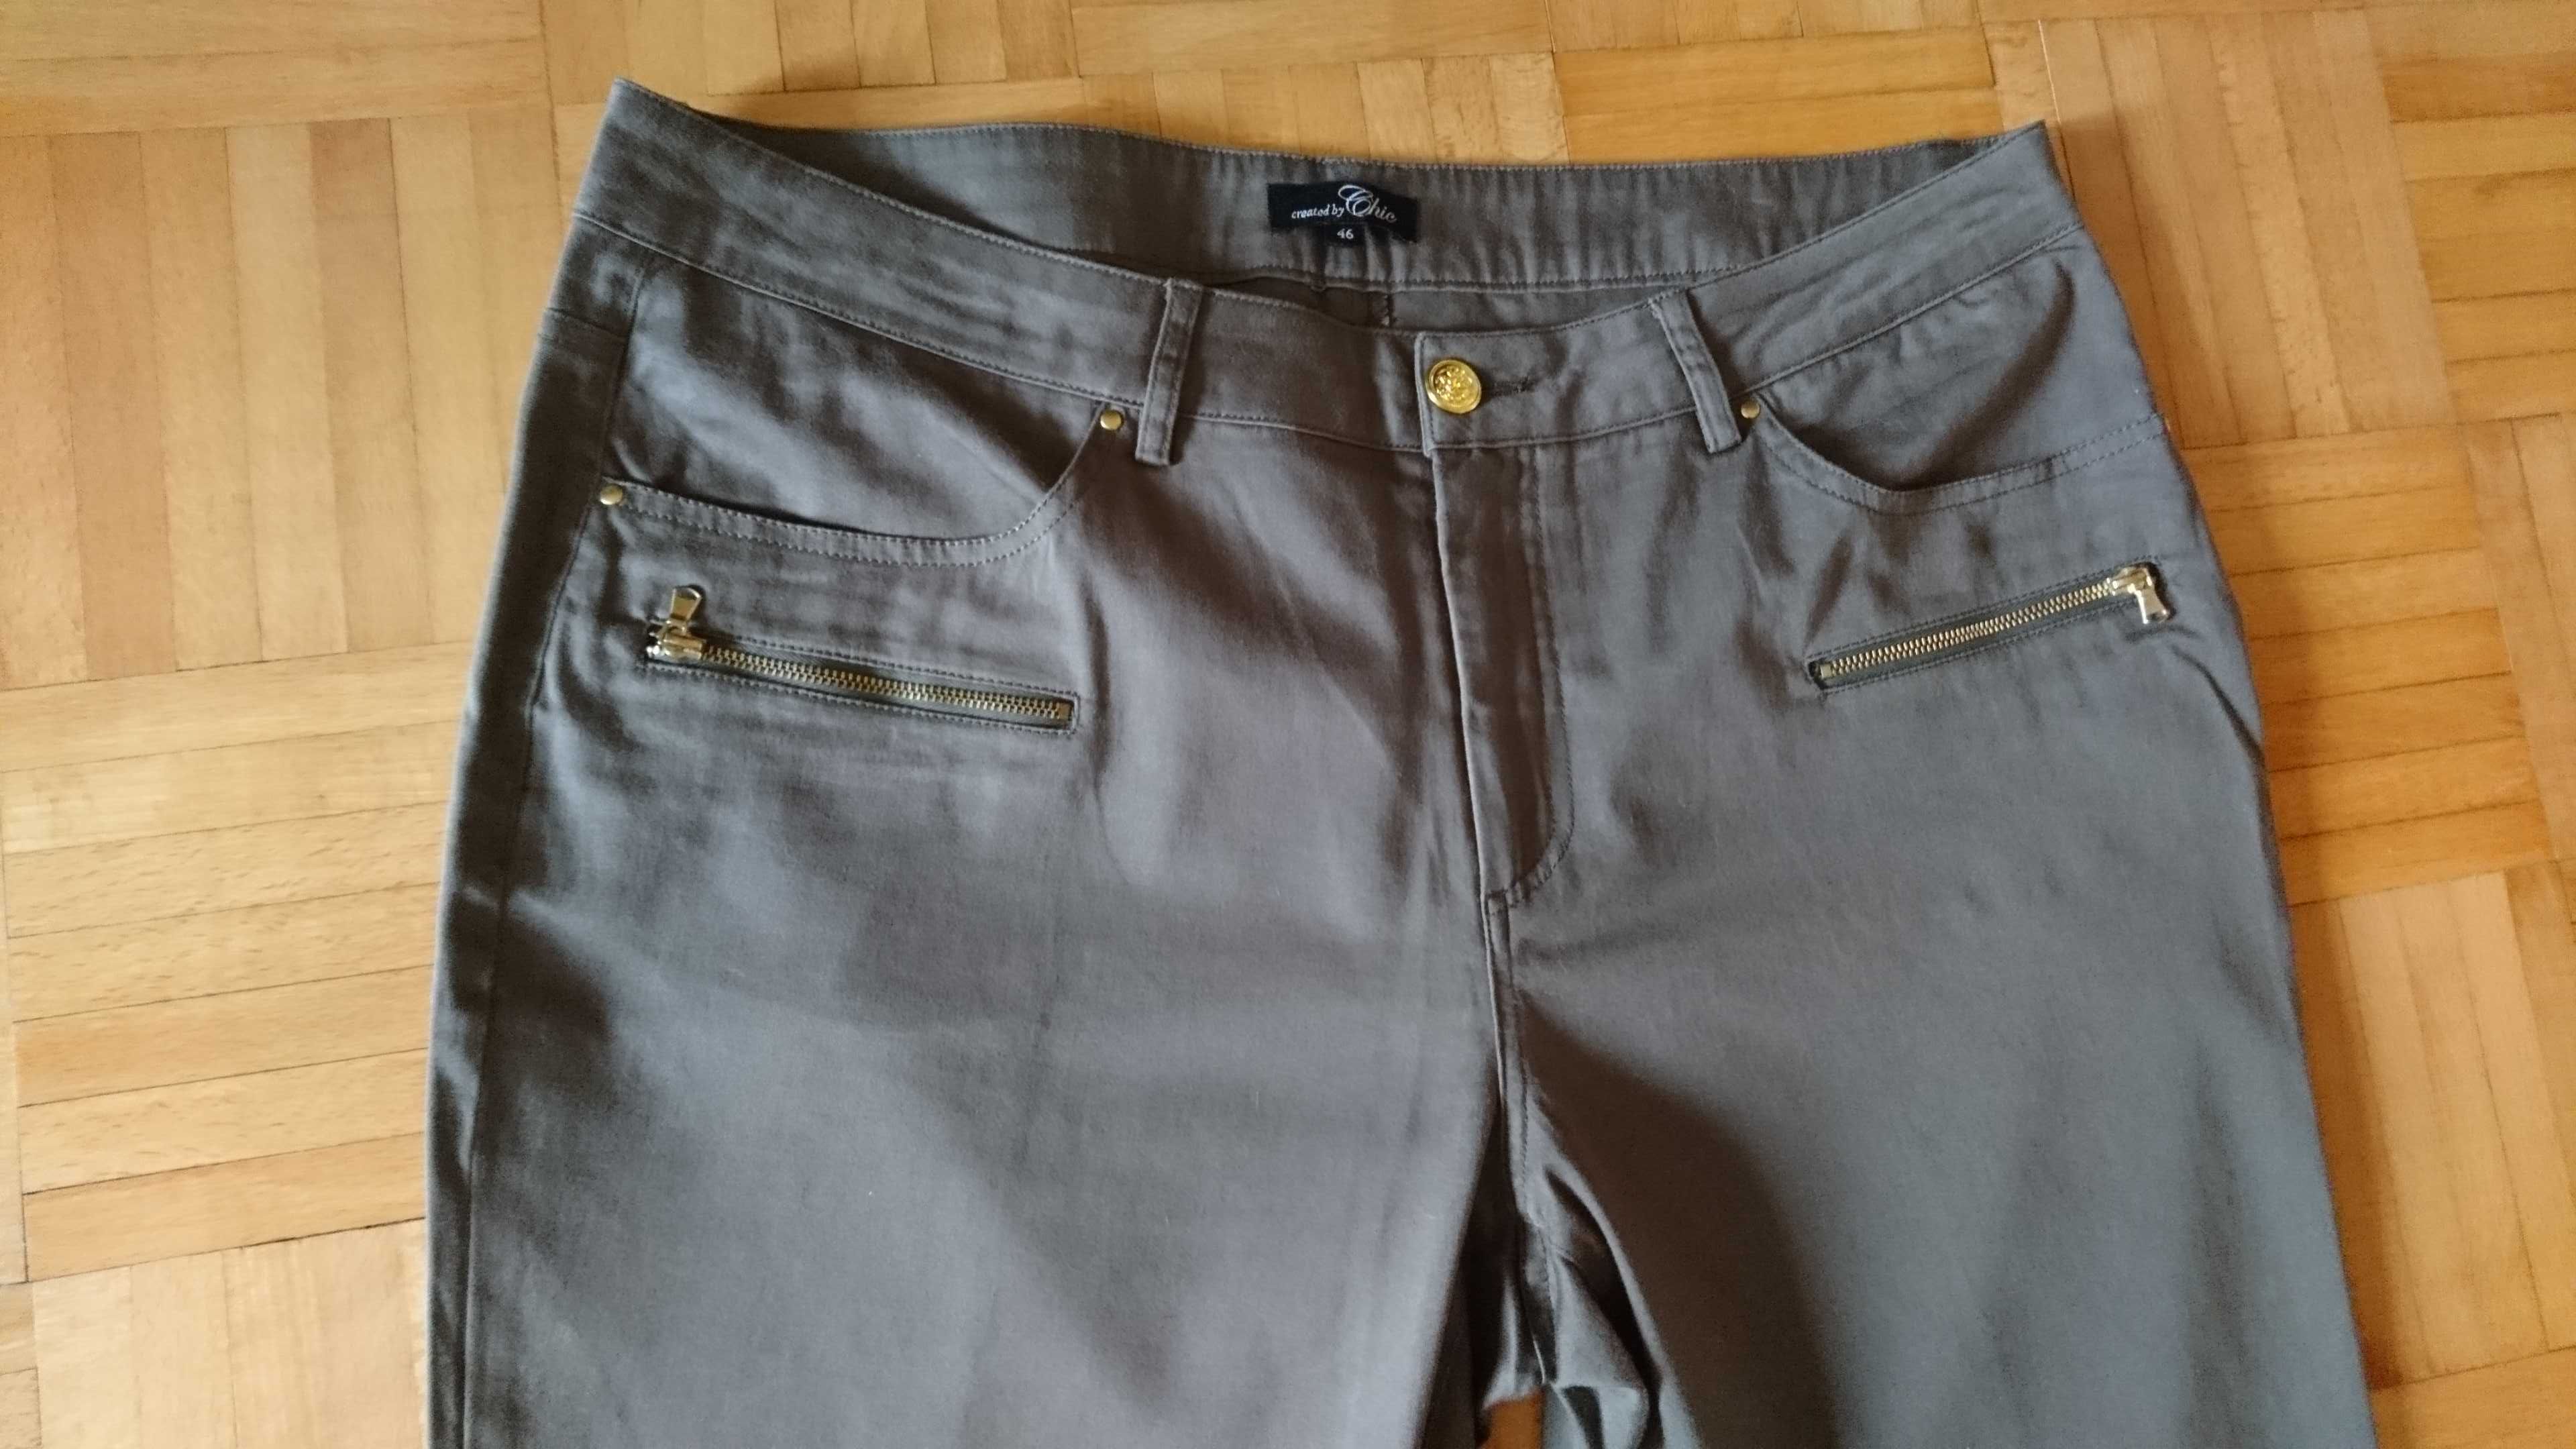 Oliwkowe spodnie Cellbes, r. 46 L/XL Starachowice • OLX.pl